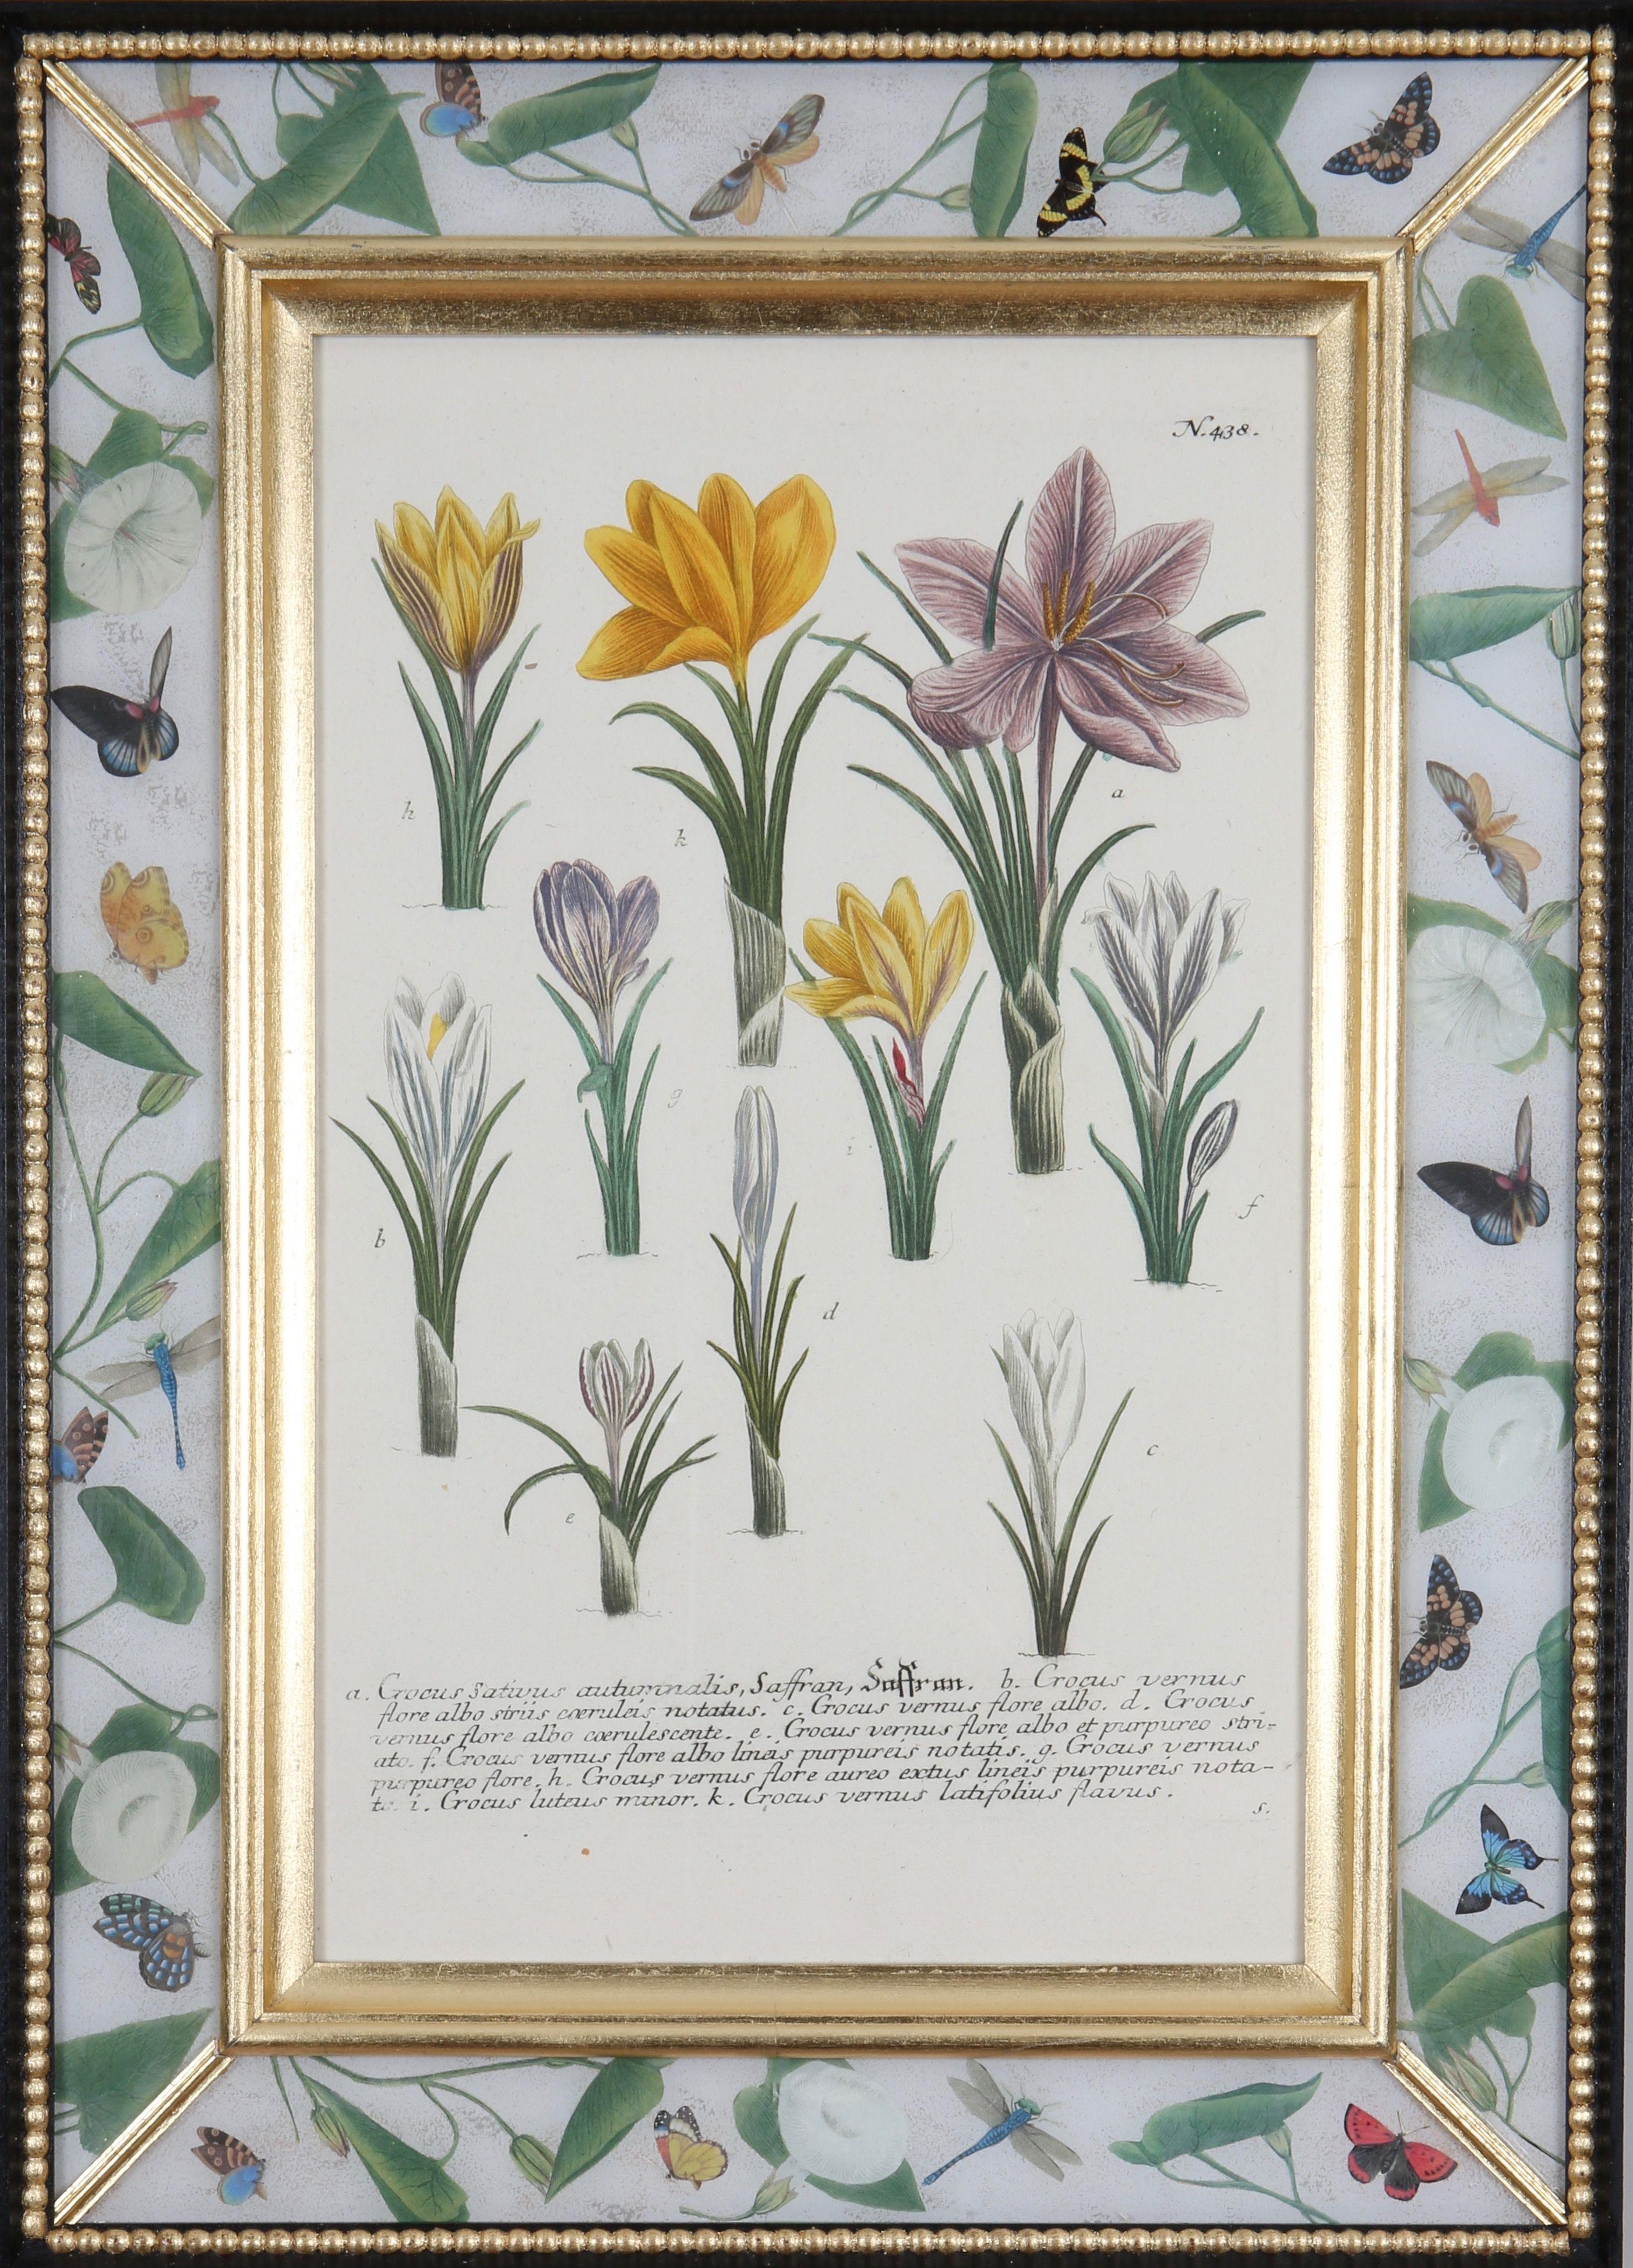 Une merveilleuse sélection de  gravures en mezzotinte coloriées à la main tirées de : ""Phytanthoza Iconographia"",  vers 1739, présentées dans des cadres faits à la main en vermeil, ébonite et décalcomanie. 

Johann Weinmann (1683-1741), pharmacien